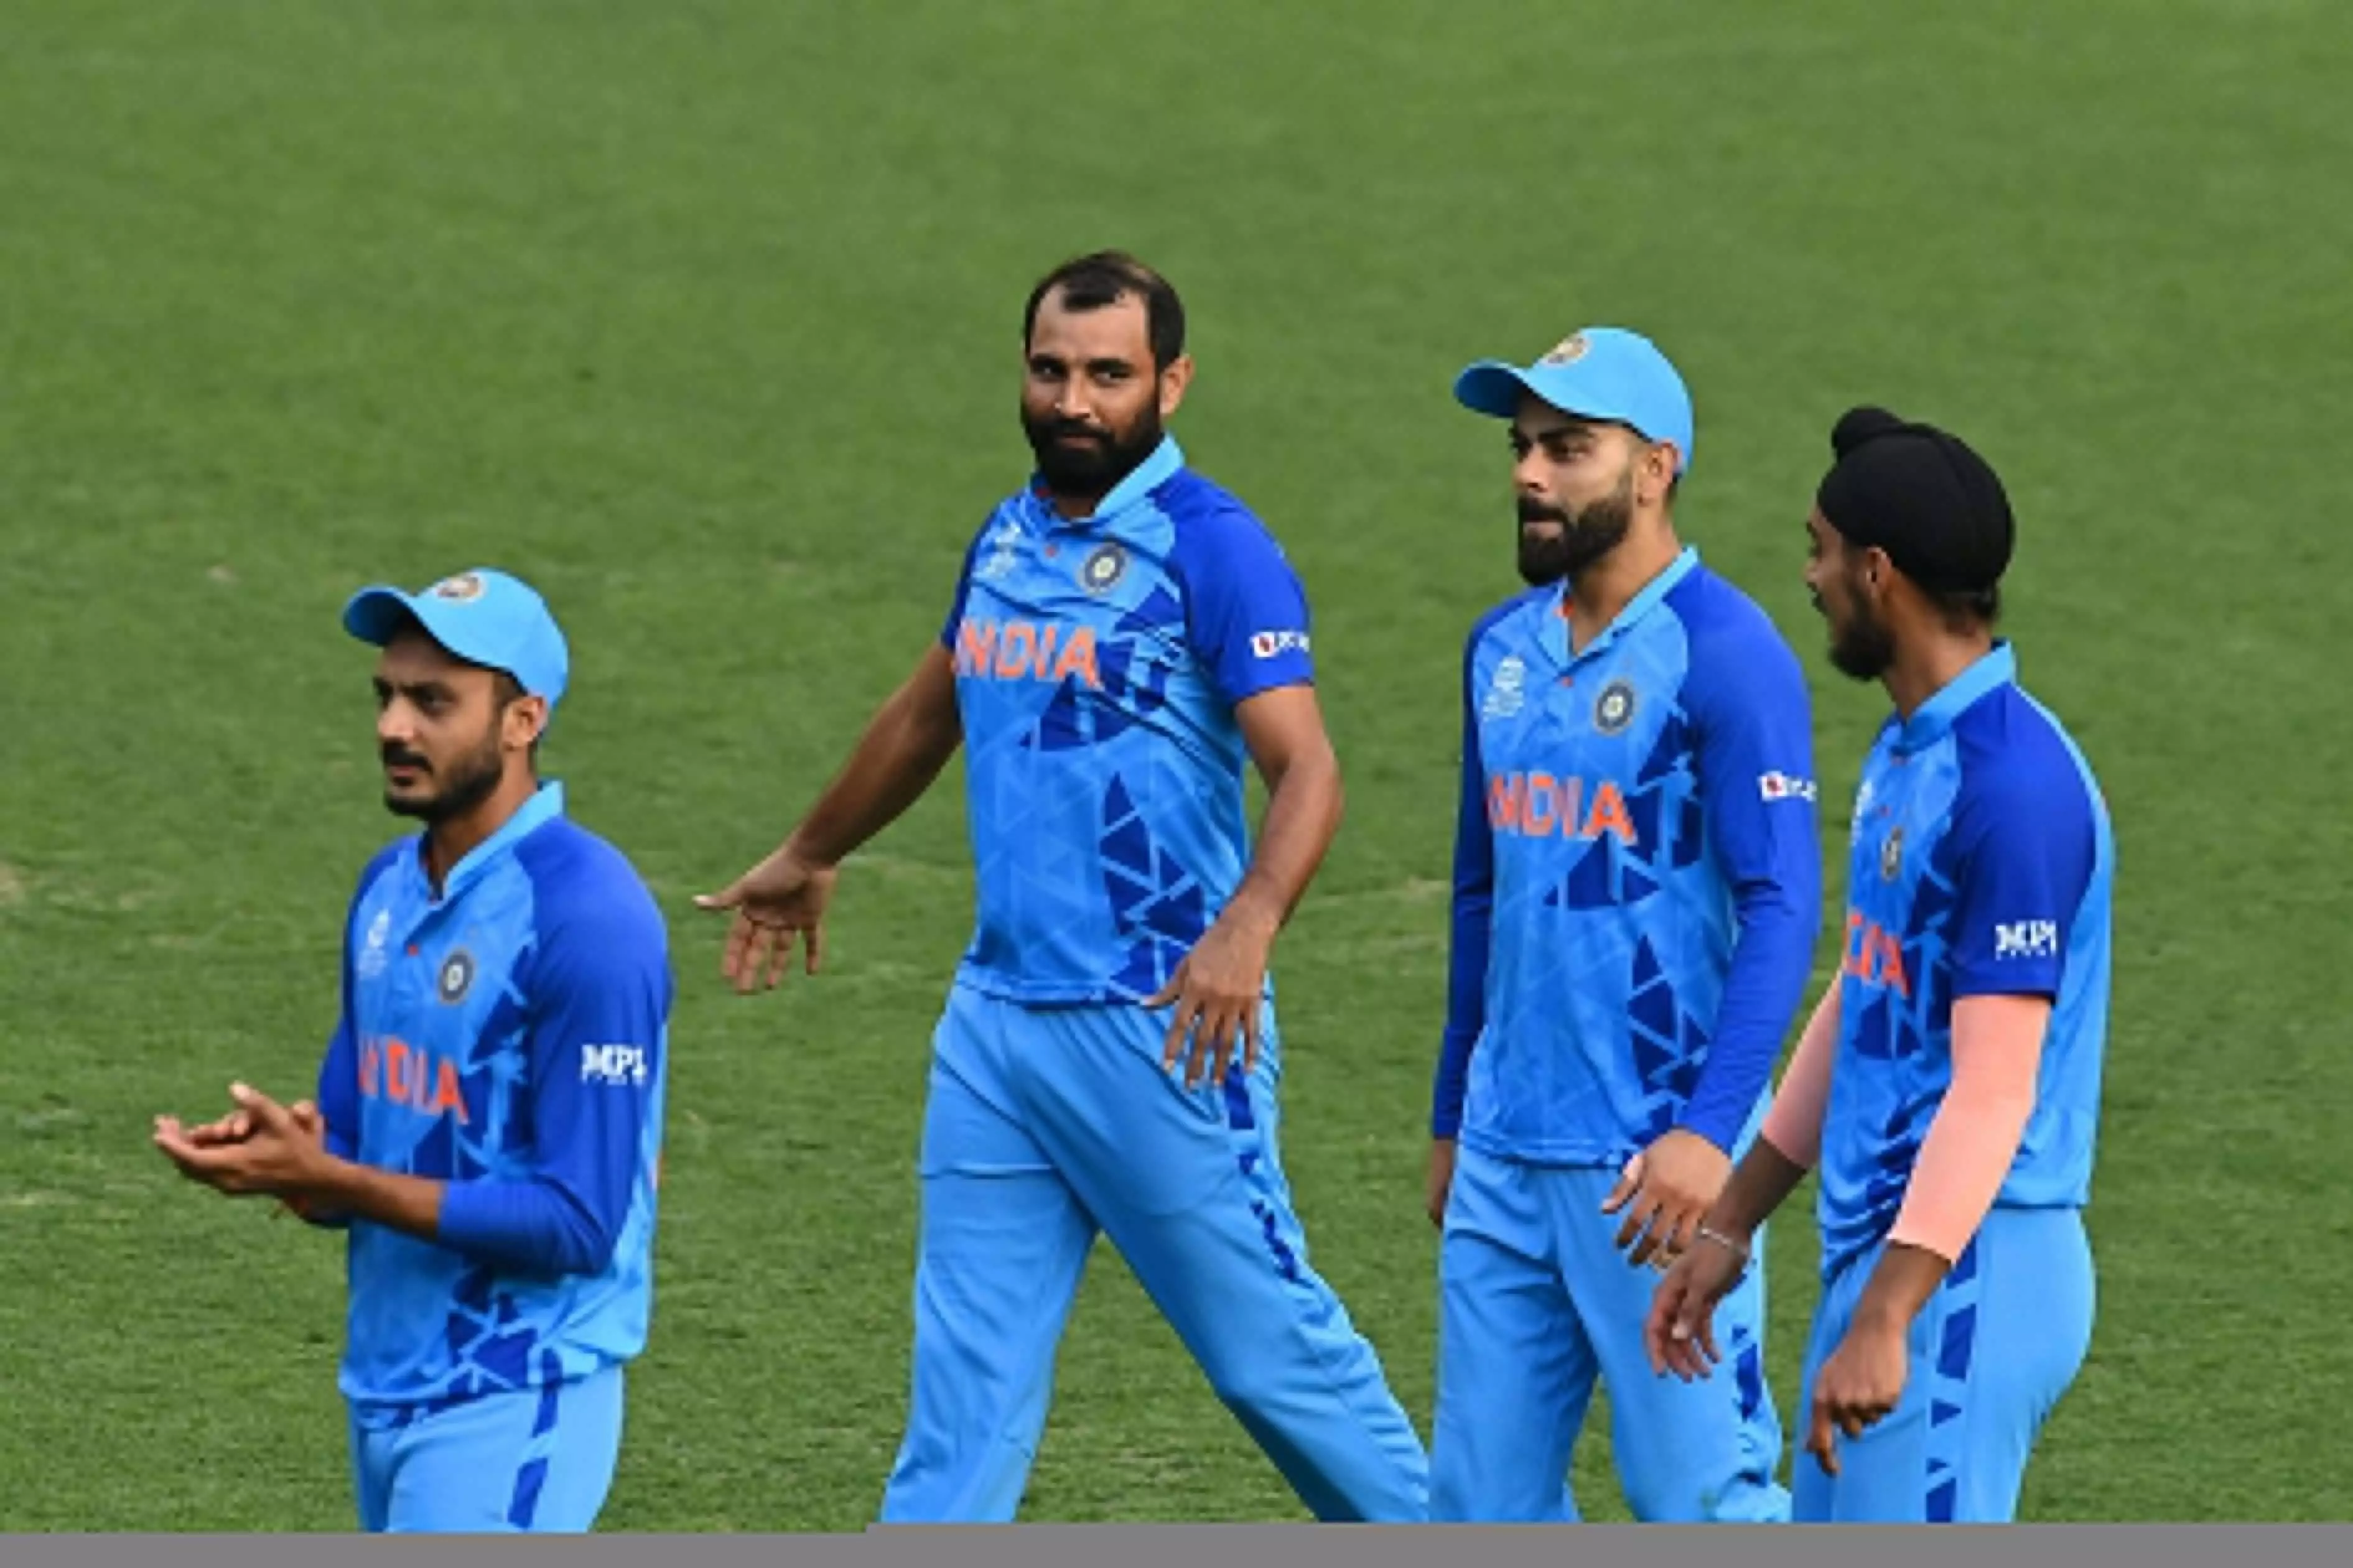 T20 World Cup INDvsAUS : आखिरी ओवर में मोहम्मद शमी का कहर, 4 विकेट लेकर ऑस्ट्रेलिया की कमर तोड़ी, भारत जीता